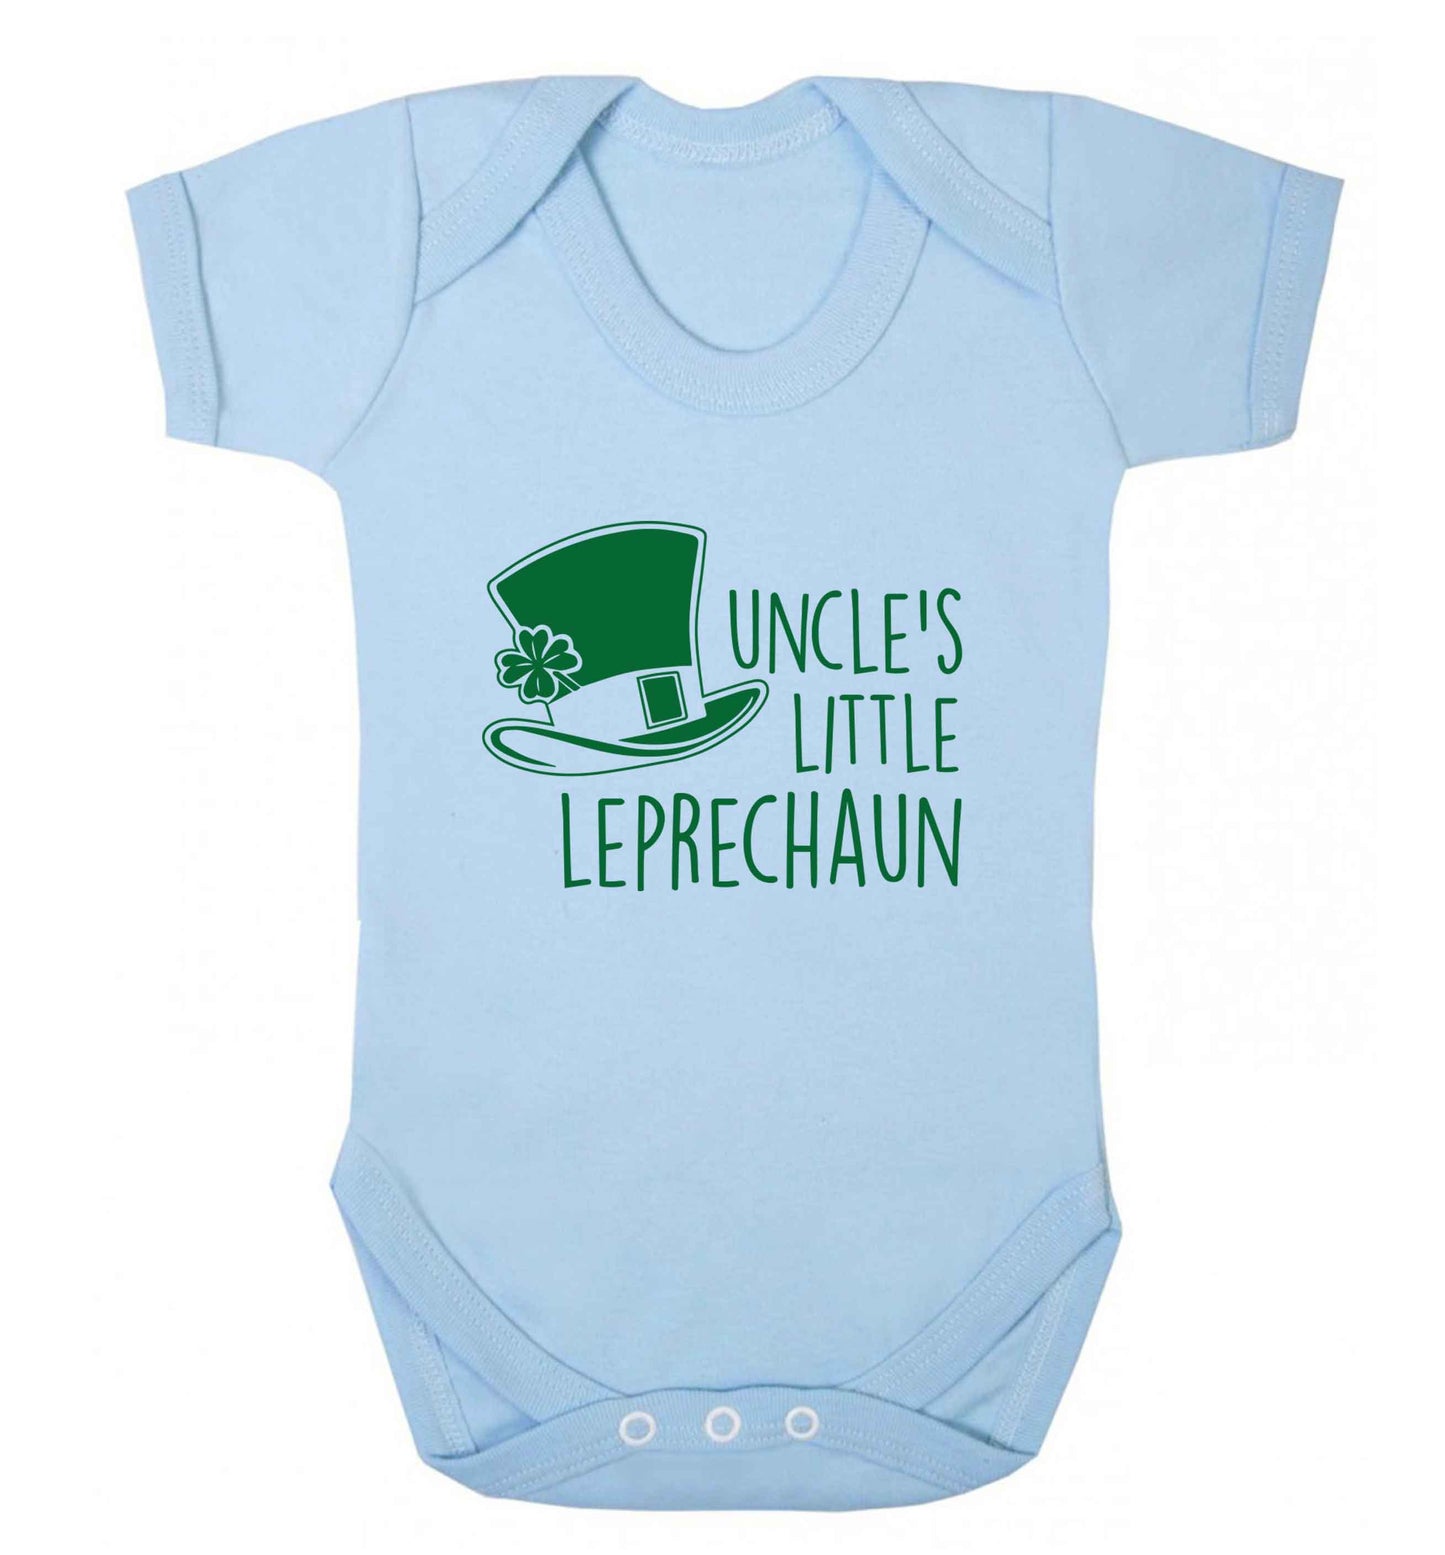 Uncles little leprechaun baby vest pale blue 18-24 months